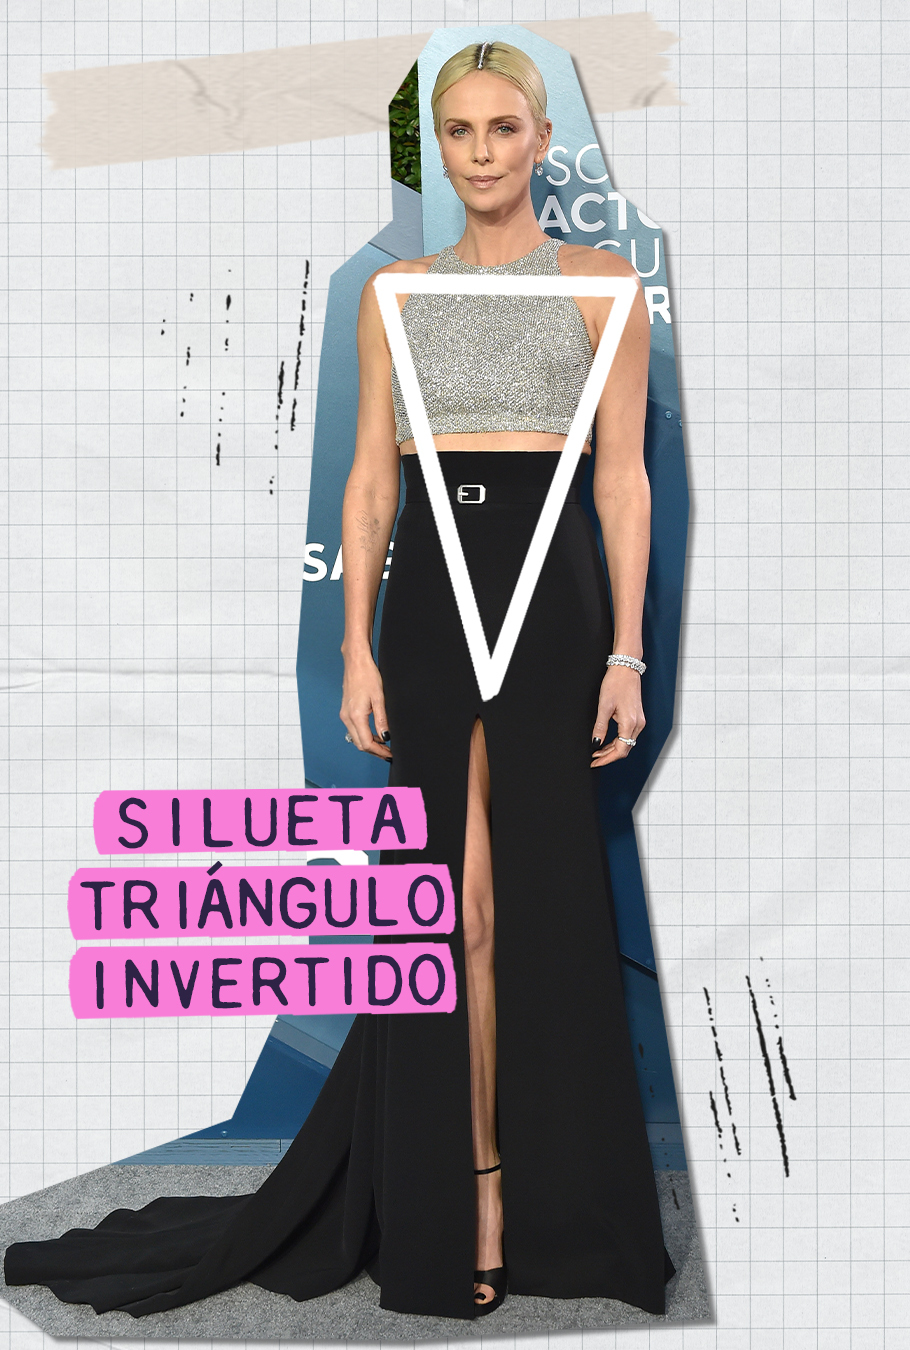 Charlize Theron, ejemplo de cuerpo triángulo invertido.